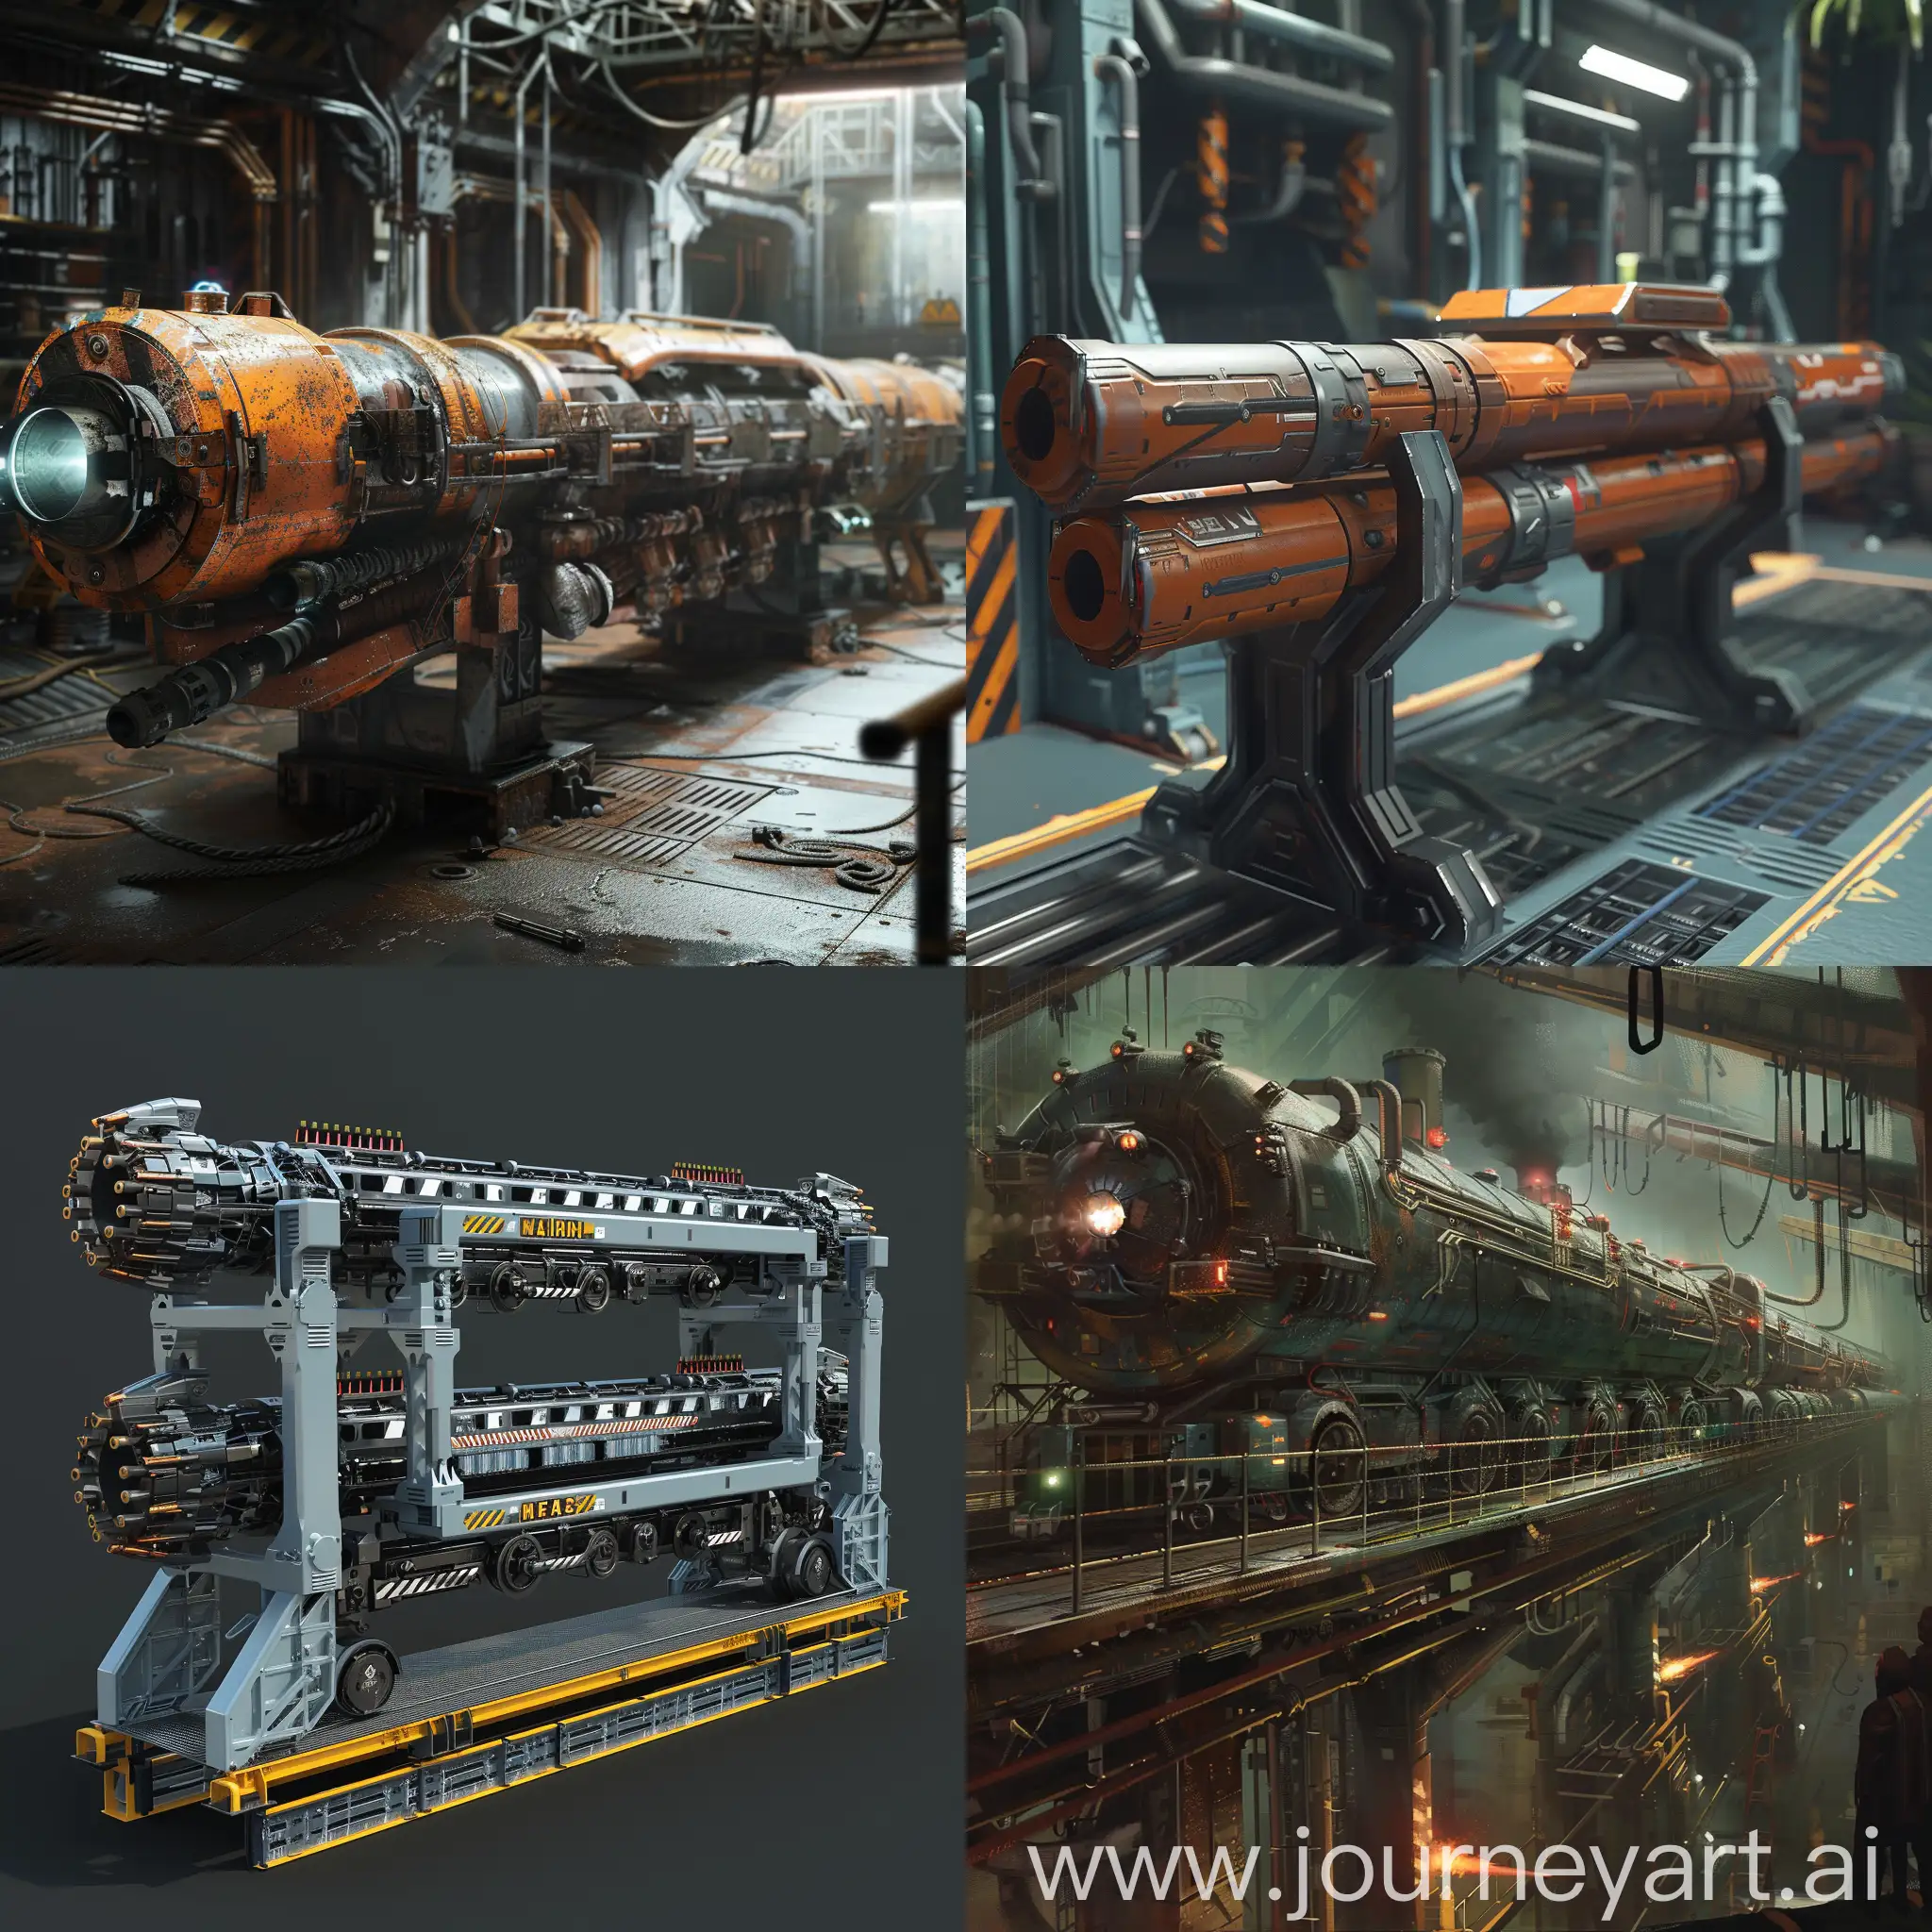 Futuristic-Railgun-Plant-in-11-Aspect-Ratio